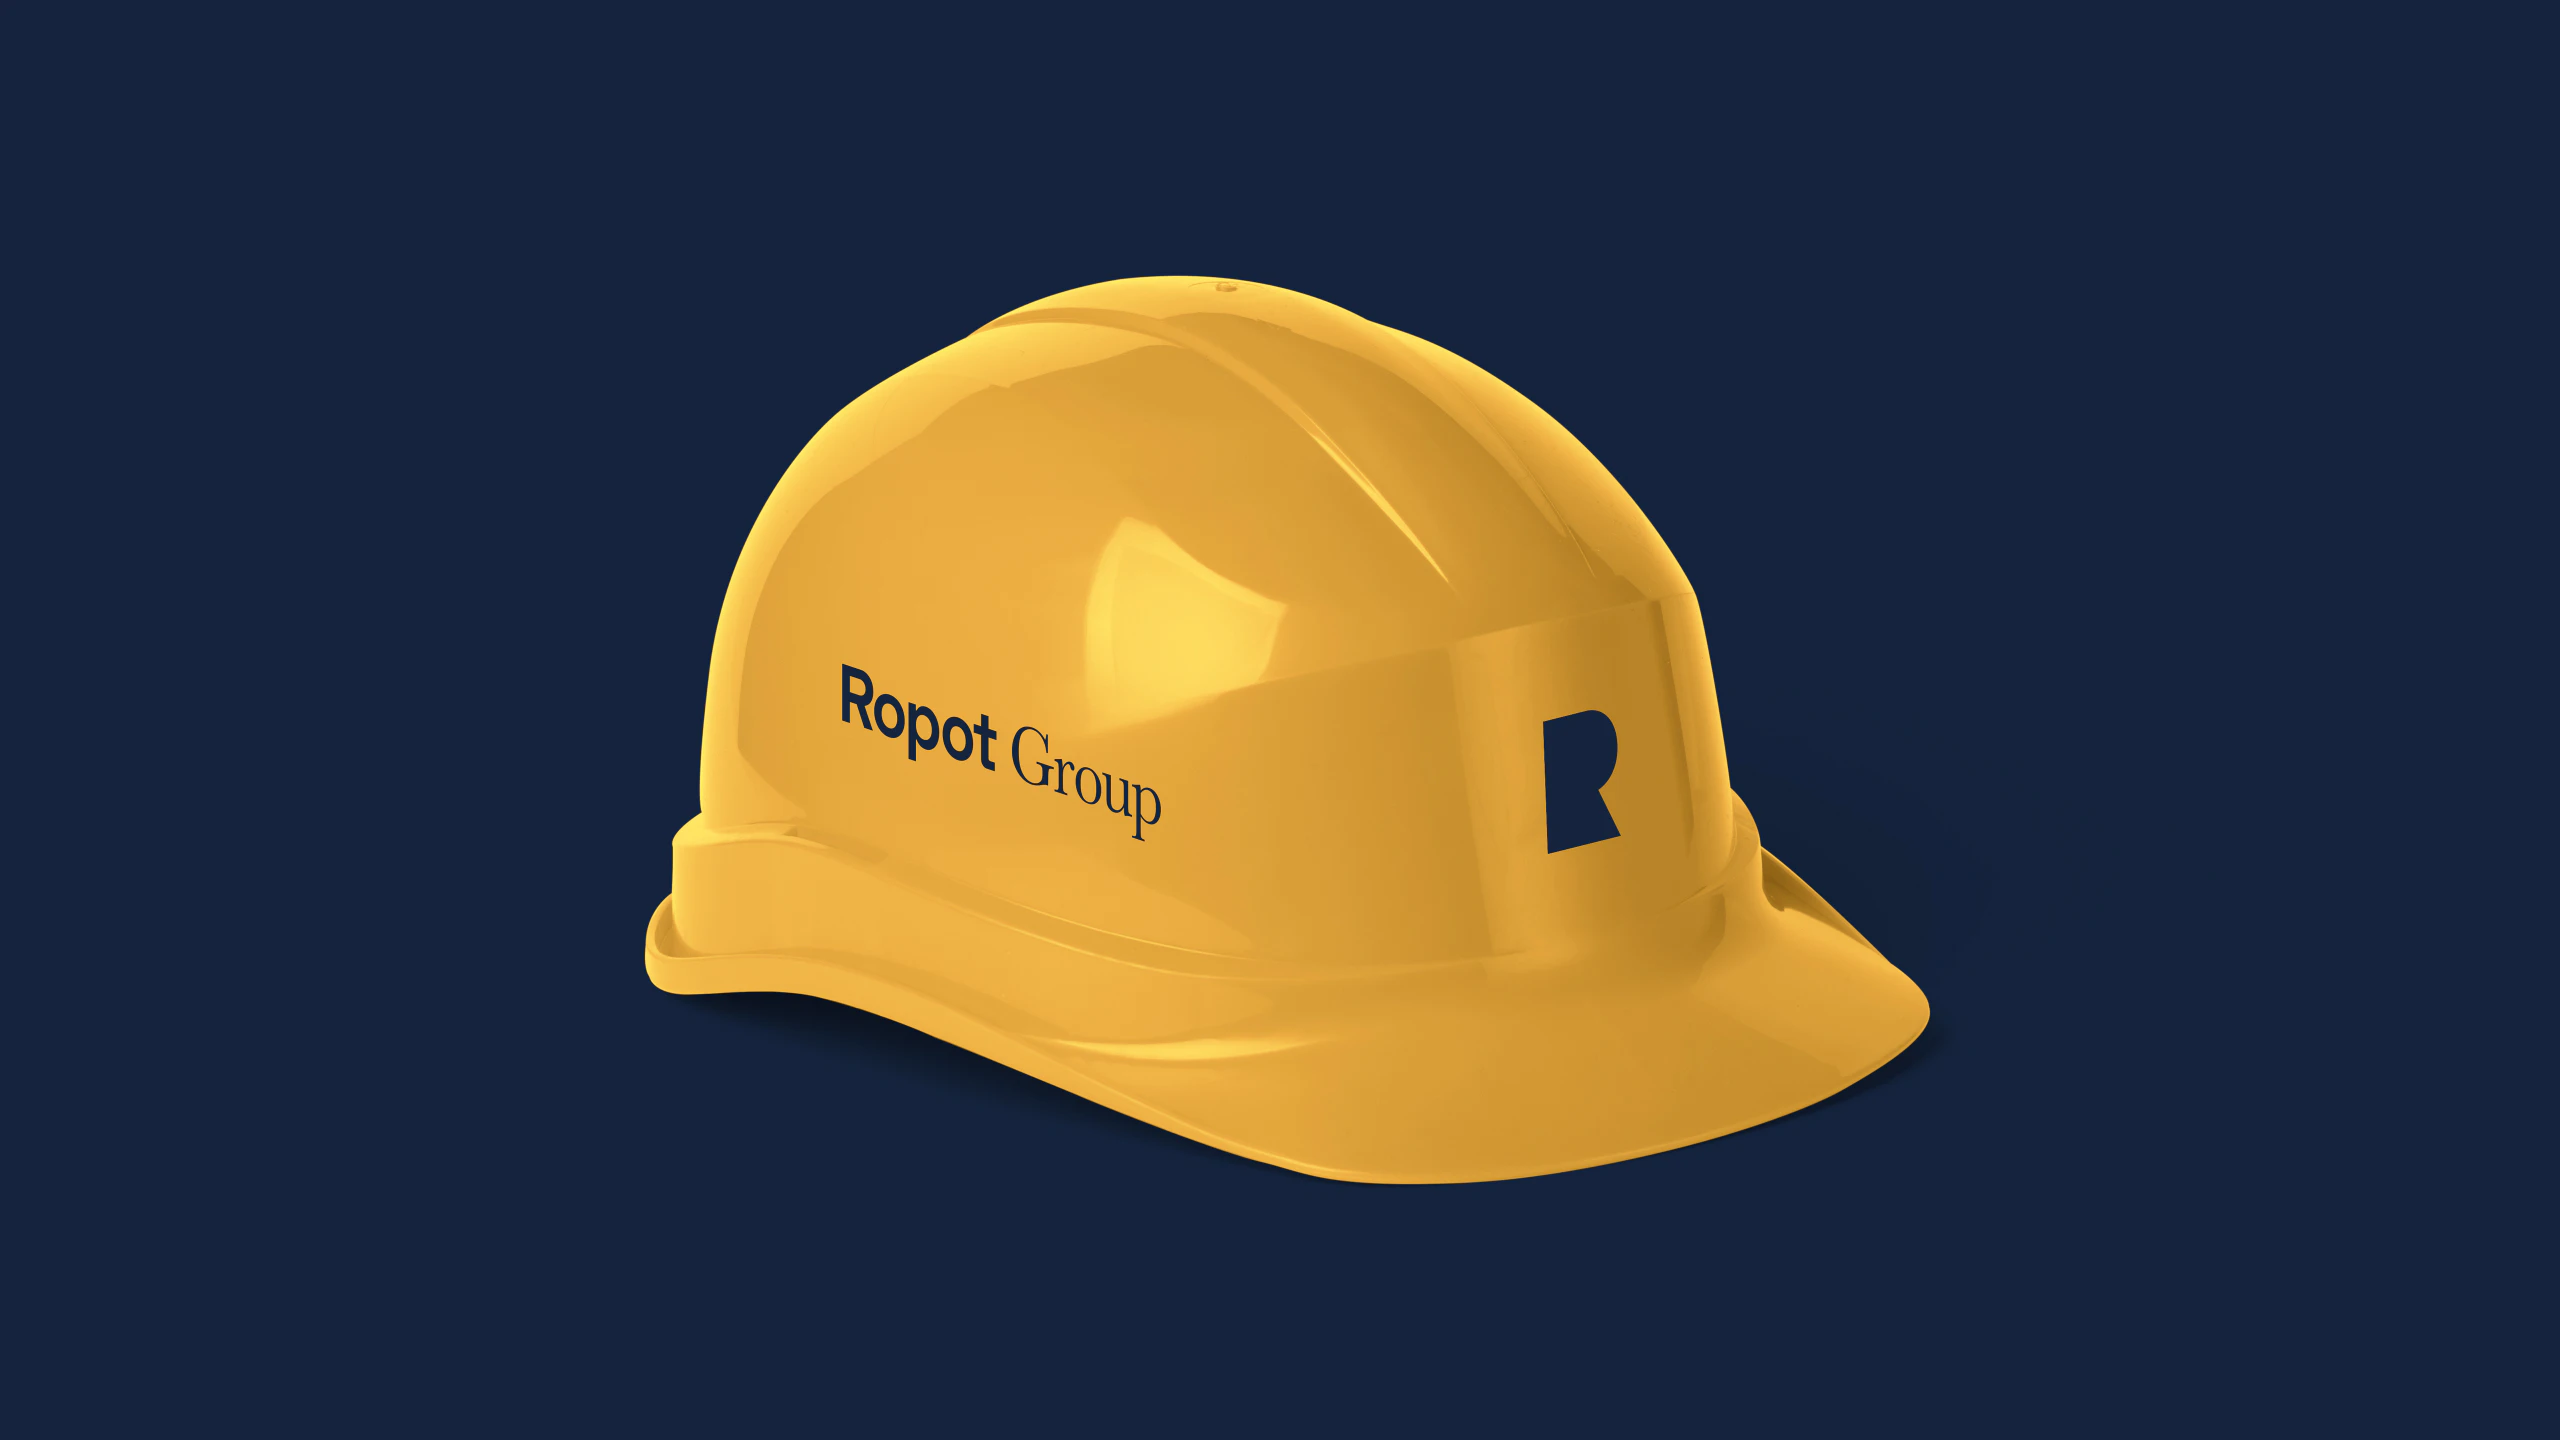 Studio-Hrastar-Ropot-Group-Helmet